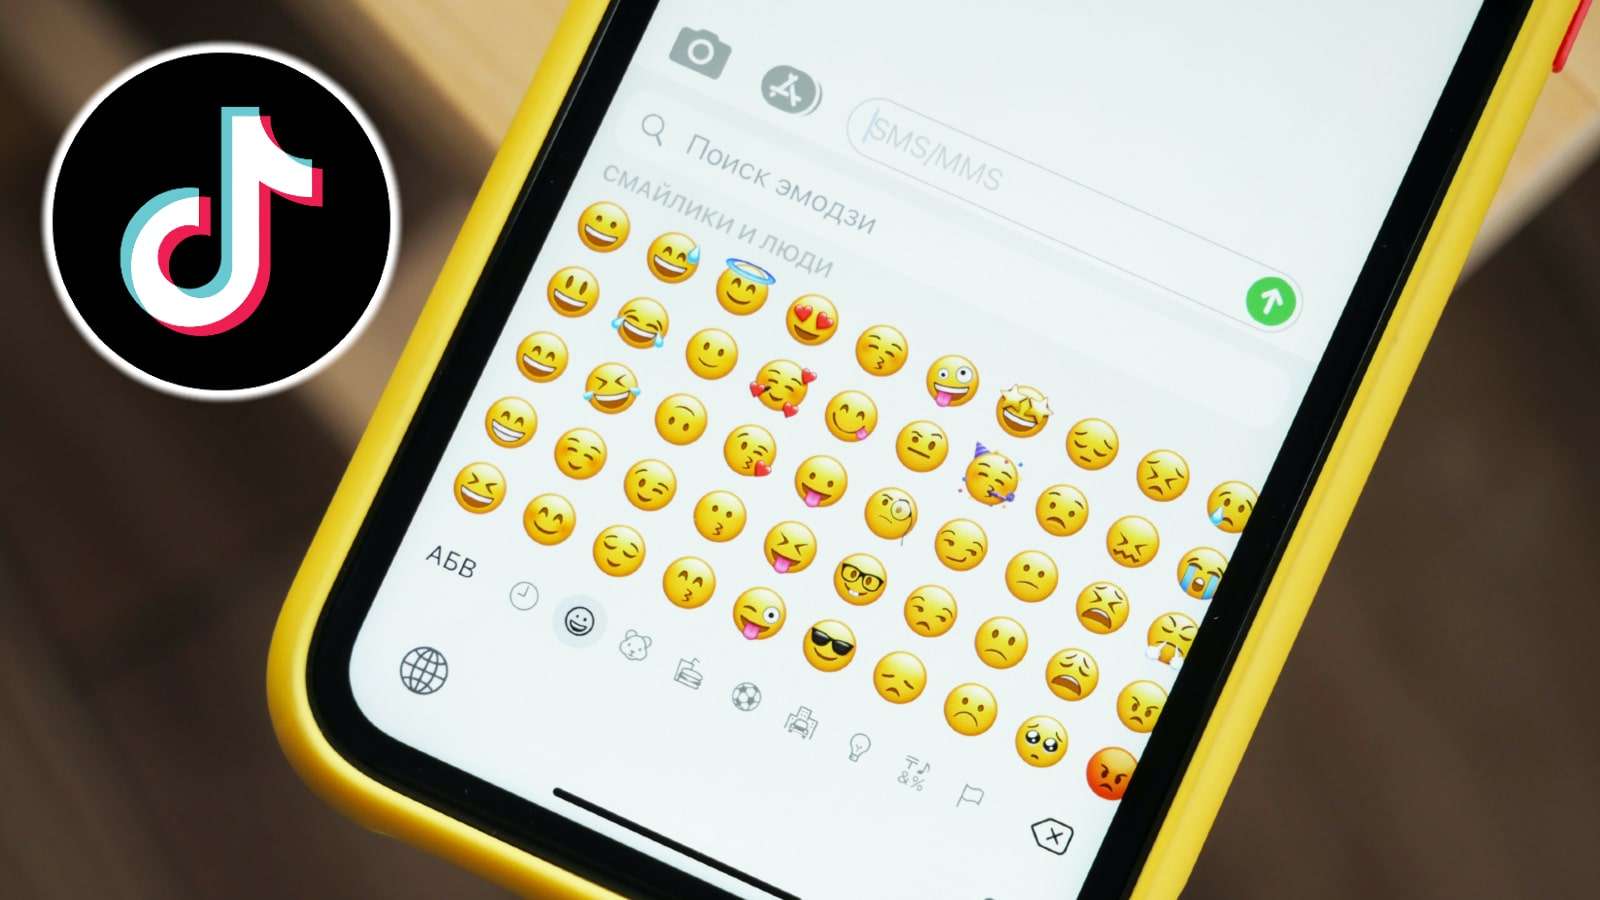 TikTok logo next to emojis on phone